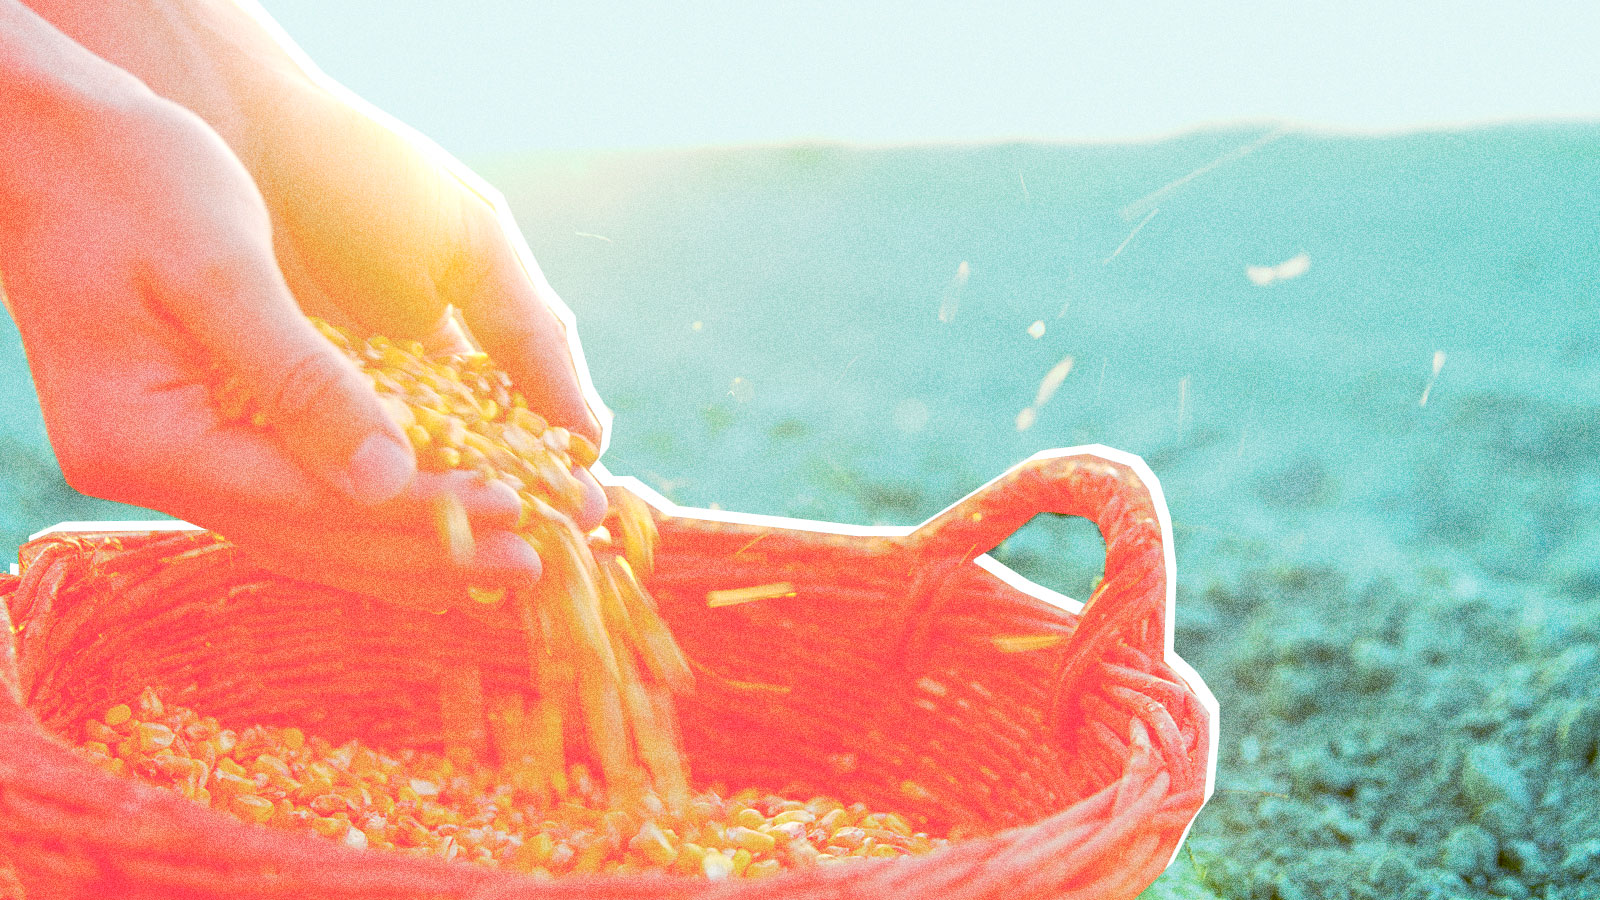 Hands spilling corn into basket